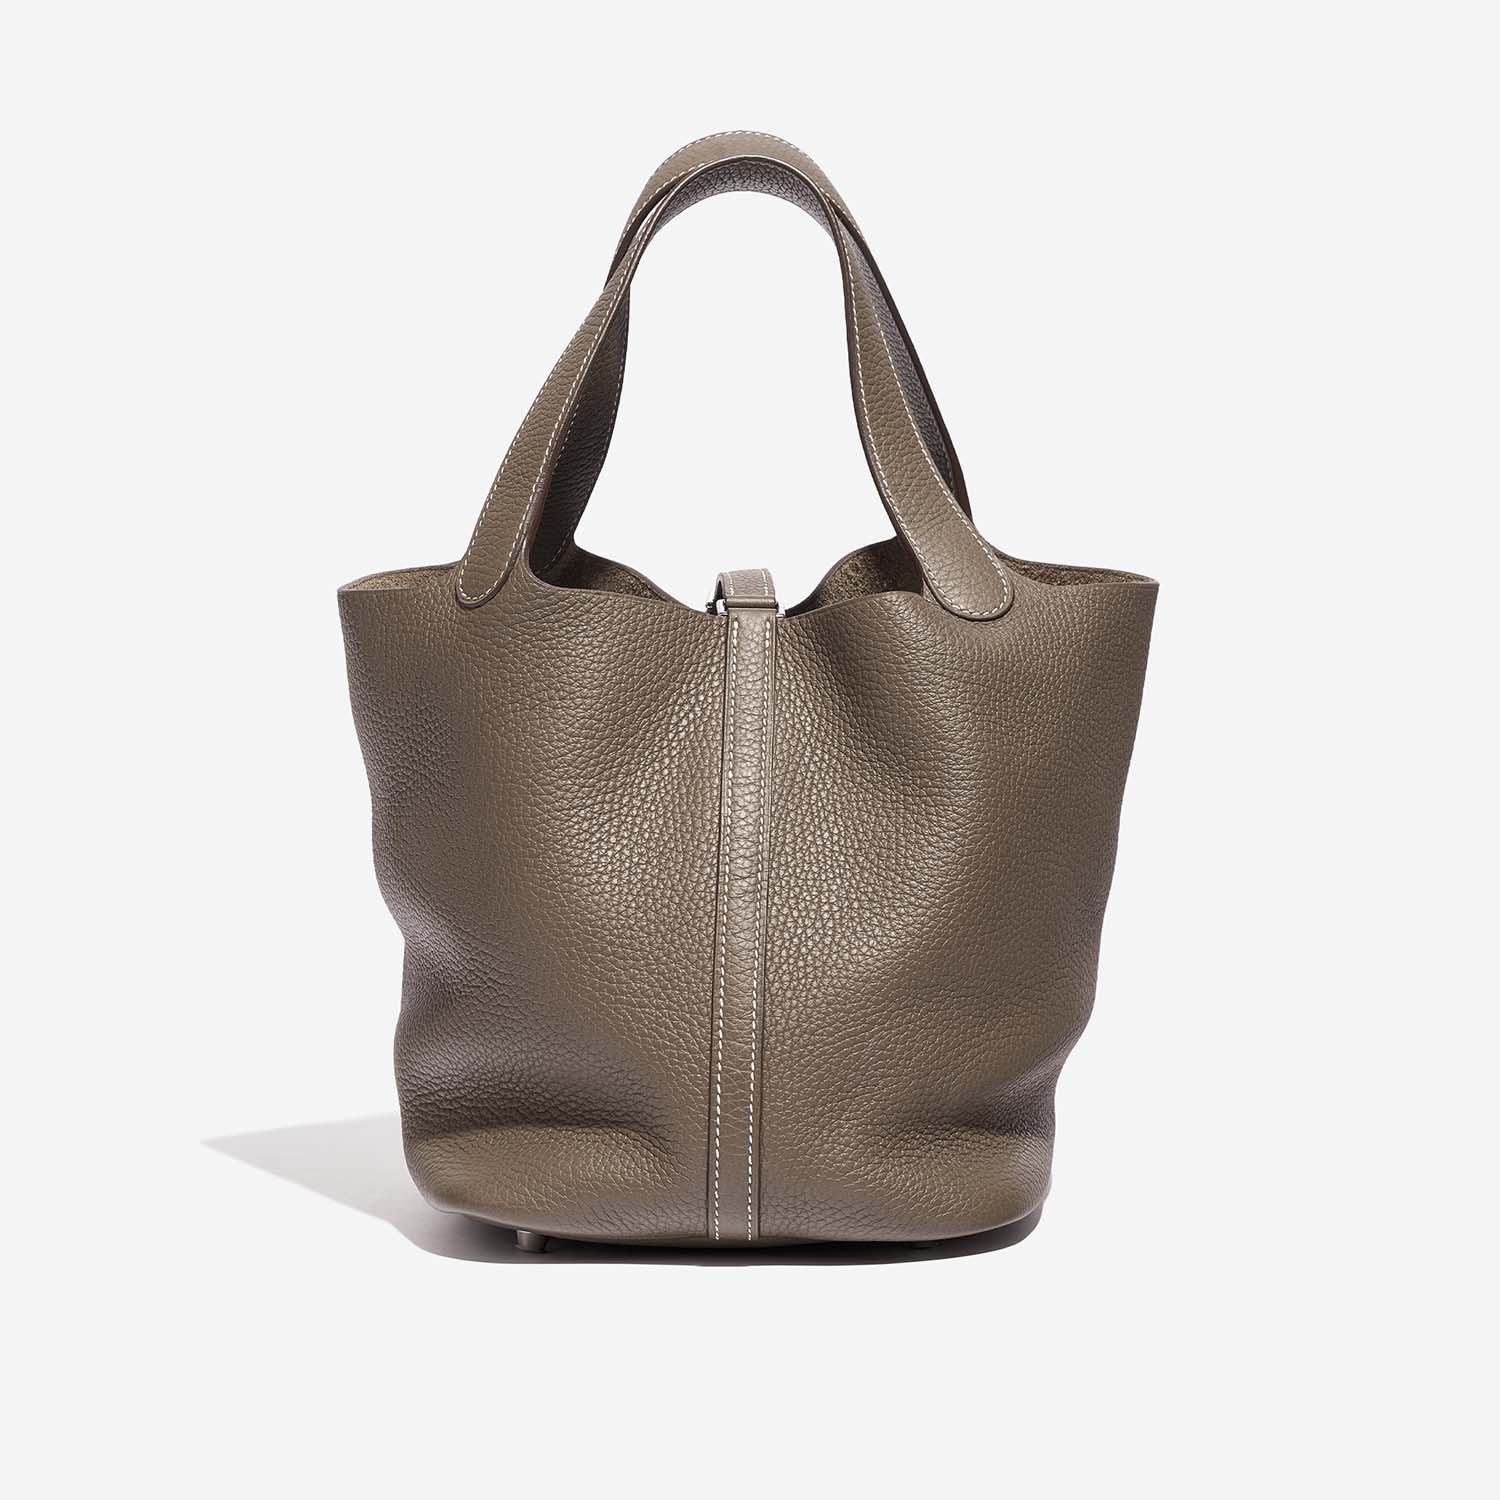 Hermès Picotin 22 Etoupe Back | Verkaufen Sie Ihre Designer-Tasche auf Saclab.com